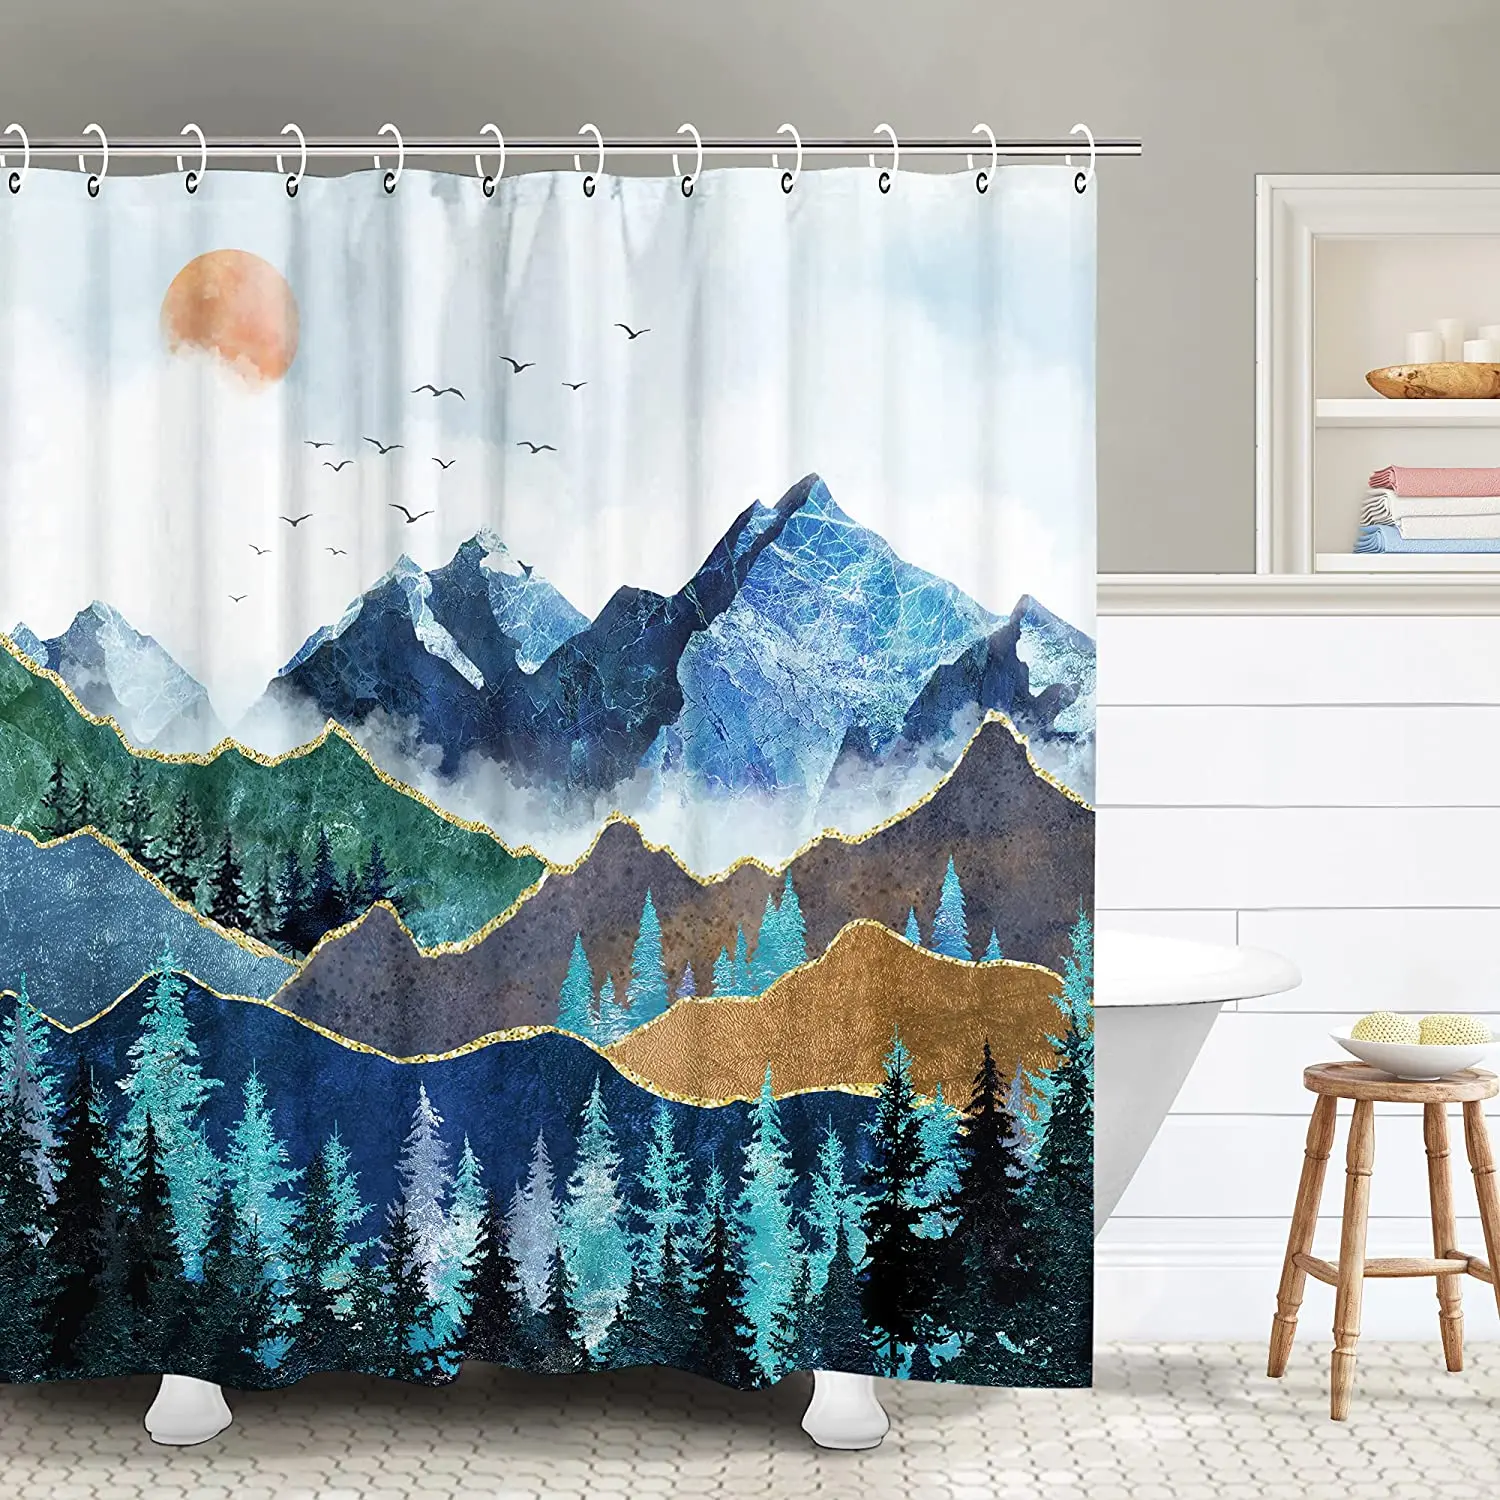 

Водонепроницаемая шторка для душа, занавеска для ванной в японском стиле, с изображением леса и пейзажа, с крючками, синего цвета